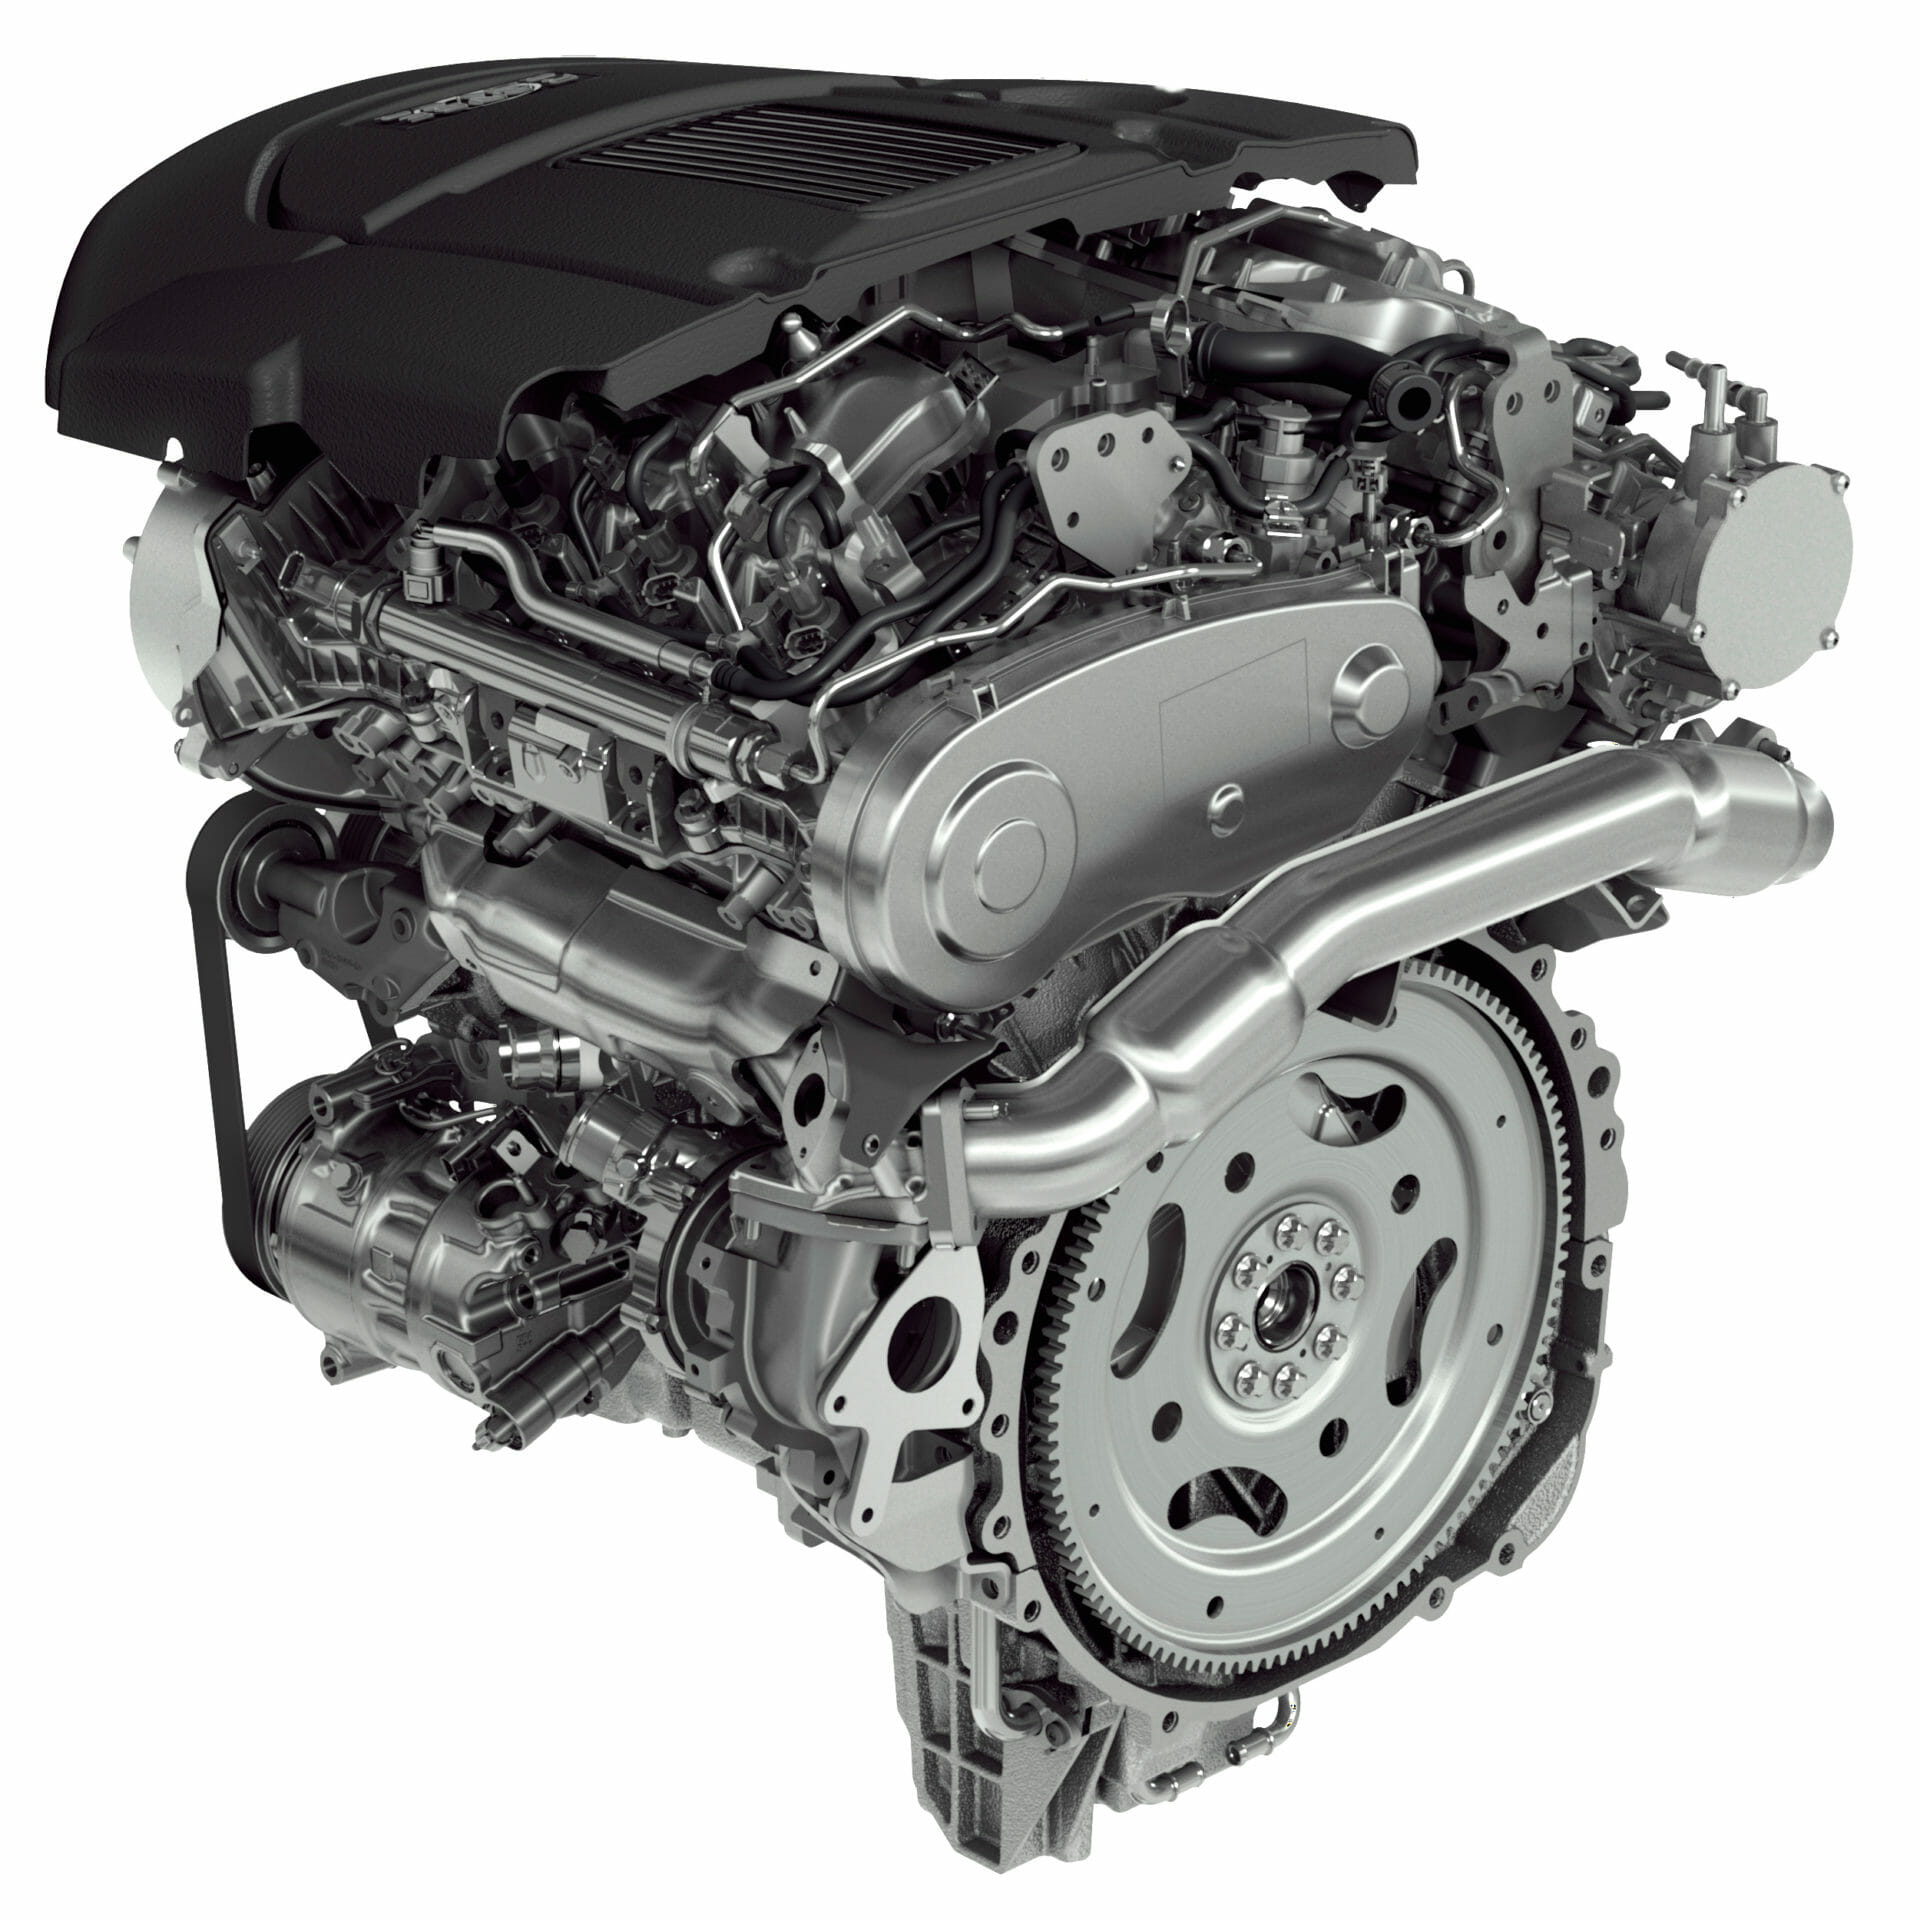 dreigen doorboren knelpunt What is the Best Land Rover Discovery Engine? - VehicleHistory